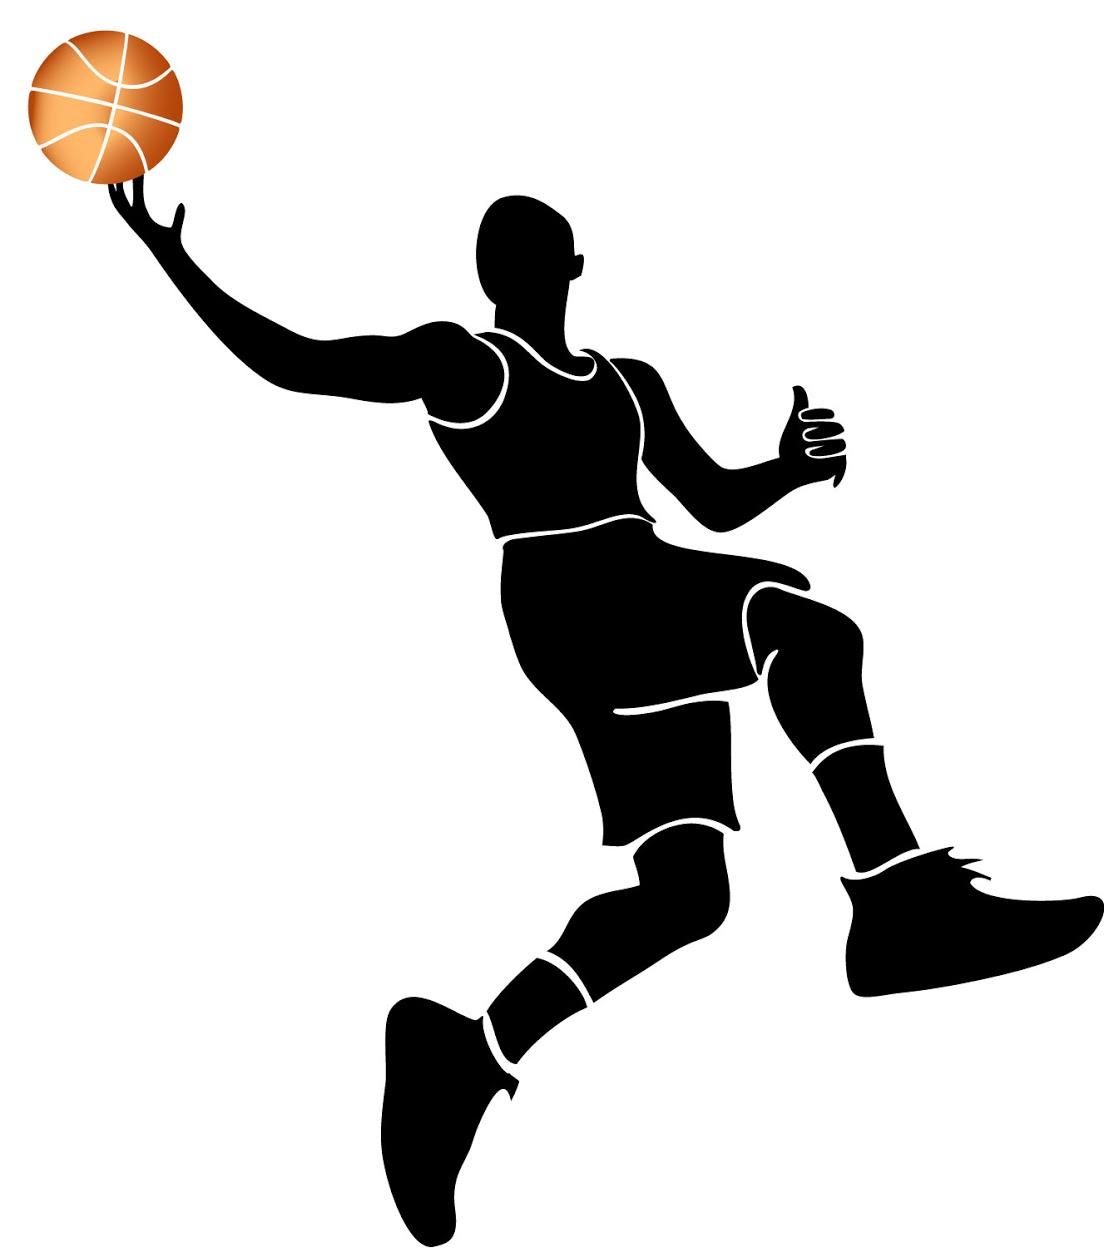 Basketball Wallpaper | Girl Basketball Player Dribbling Silhouette ...